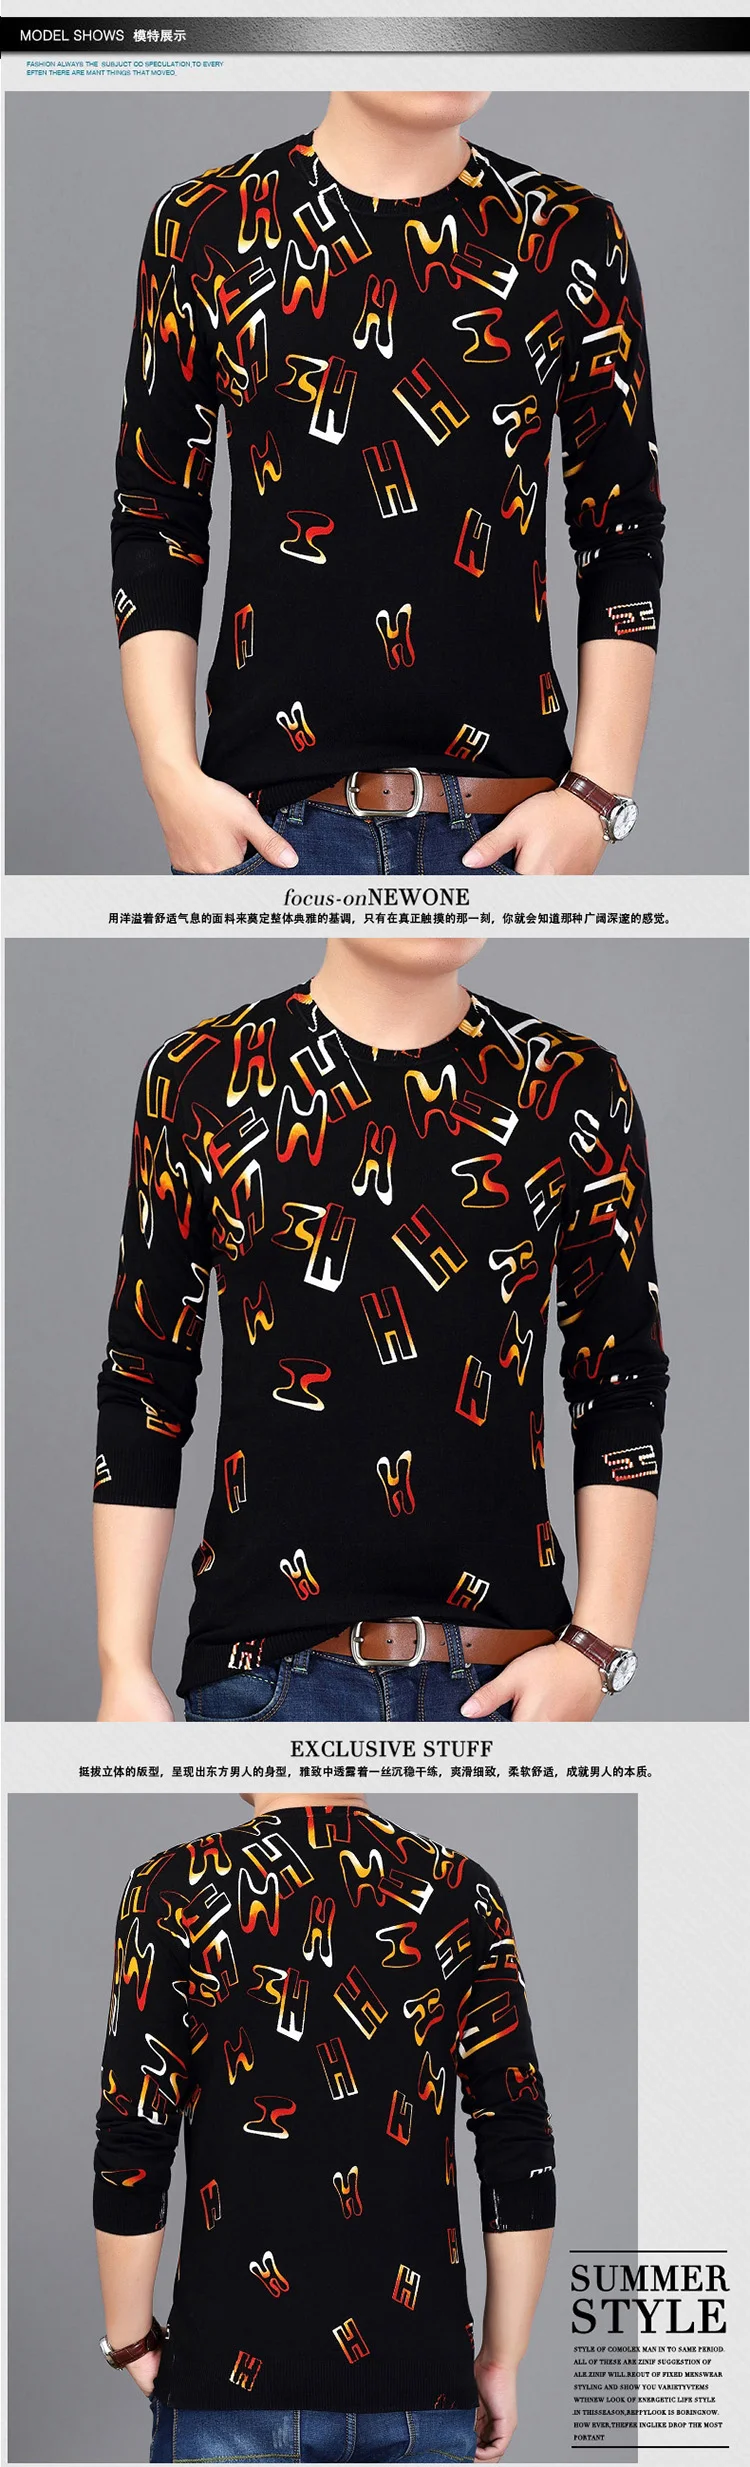 Китайский стиль, 3D рисунок панды, Модный повседневный вязаный свитер, осень 2017, мягкий и шелковистый качественный свитер для мужчин M-3XL